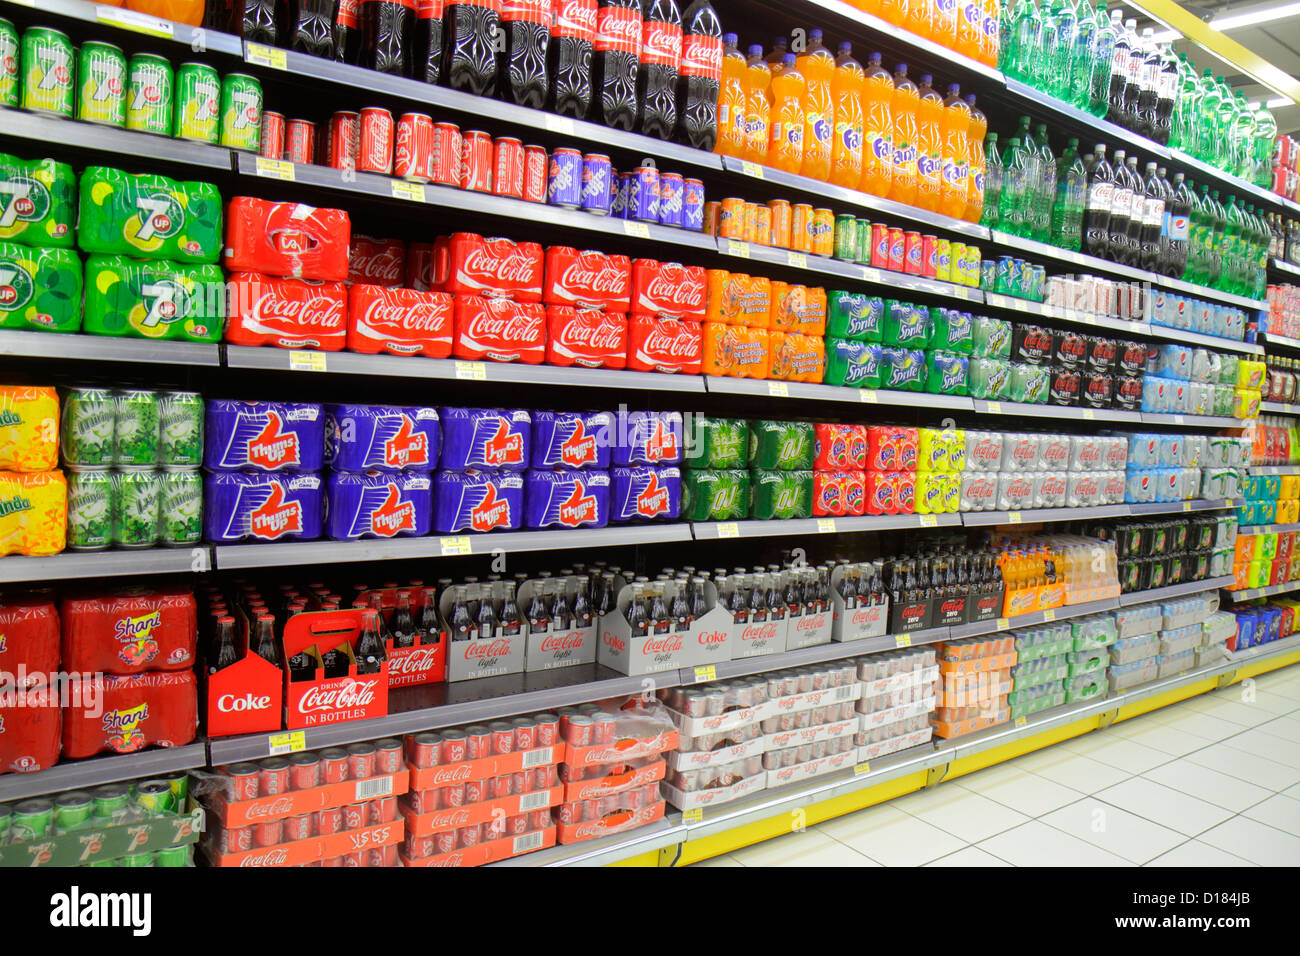 Emirats Arabes Unis Émirats Arabes Unis Dubai Al Quais Lulu Hyper Market Hypermarket, anglais arabe langues multiples Coke Coca Cola, 7 Up Fanta Thums Up soda Banque D'Images